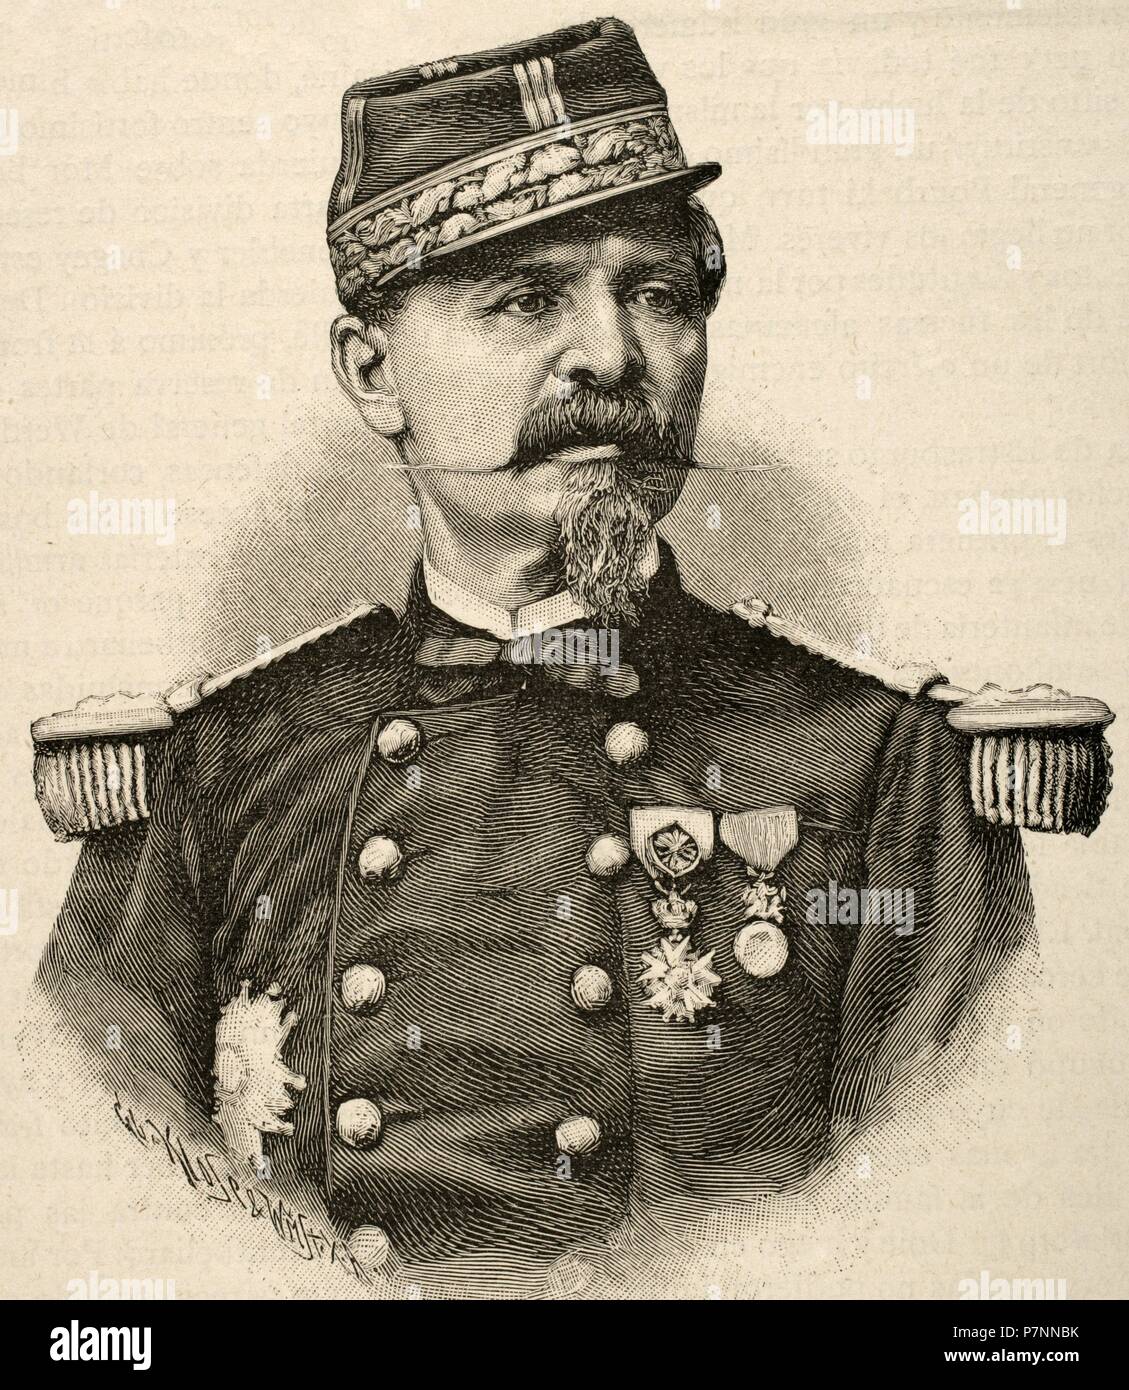 Antoine Chanzy (1823-1883). Französischer General und Gouverneur von Algerien. Porträt. Kupferstich von Klose. "Historia de Francia", 1883. Stockfoto